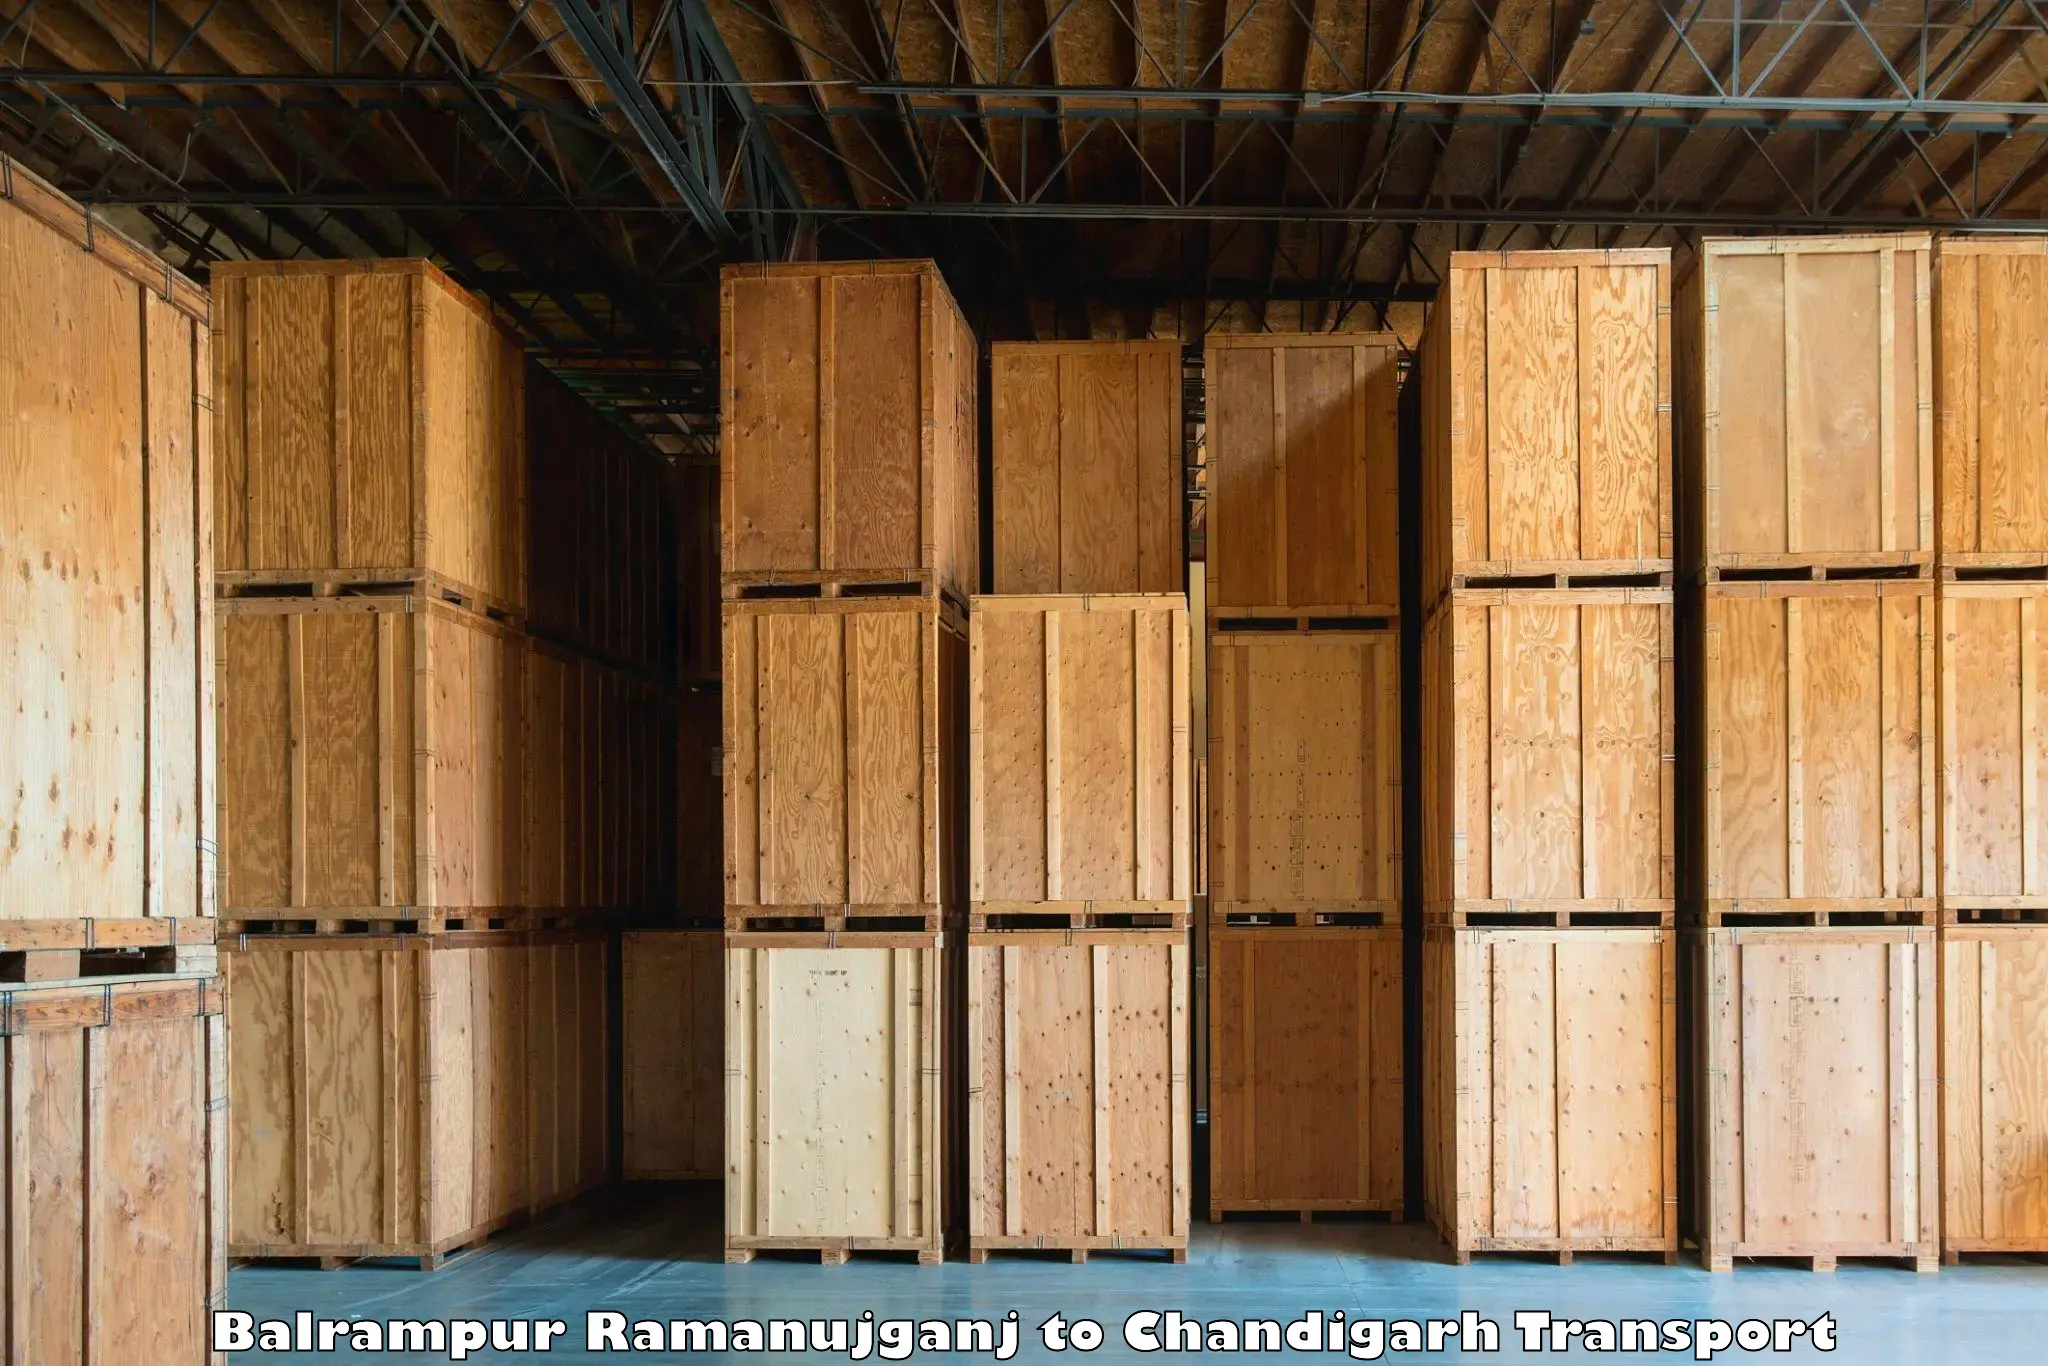 Furniture transport service Balrampur Ramanujganj to Chandigarh